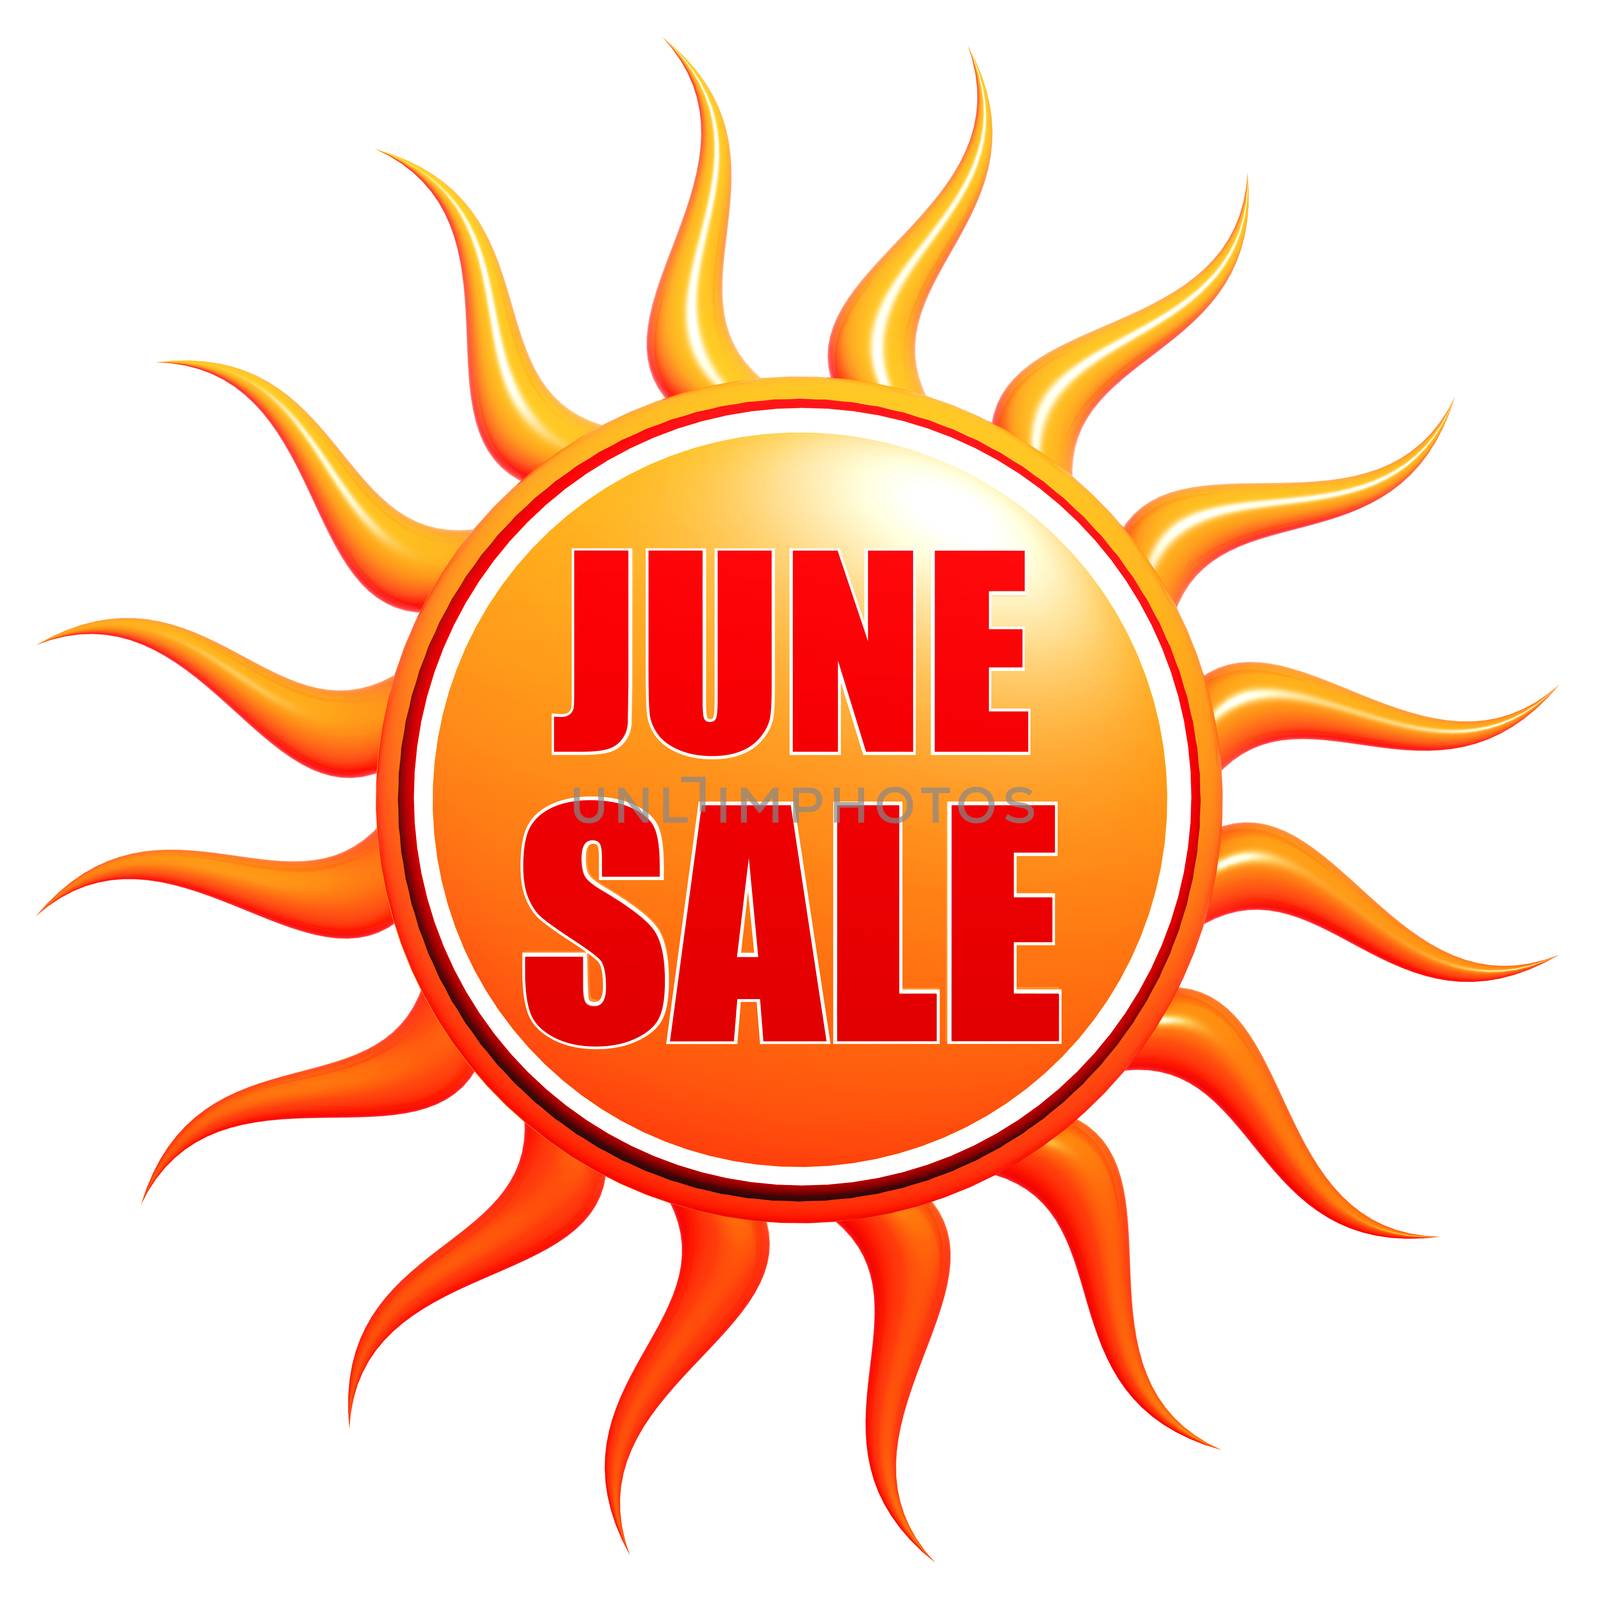 June sale in 3d sun label by marinini